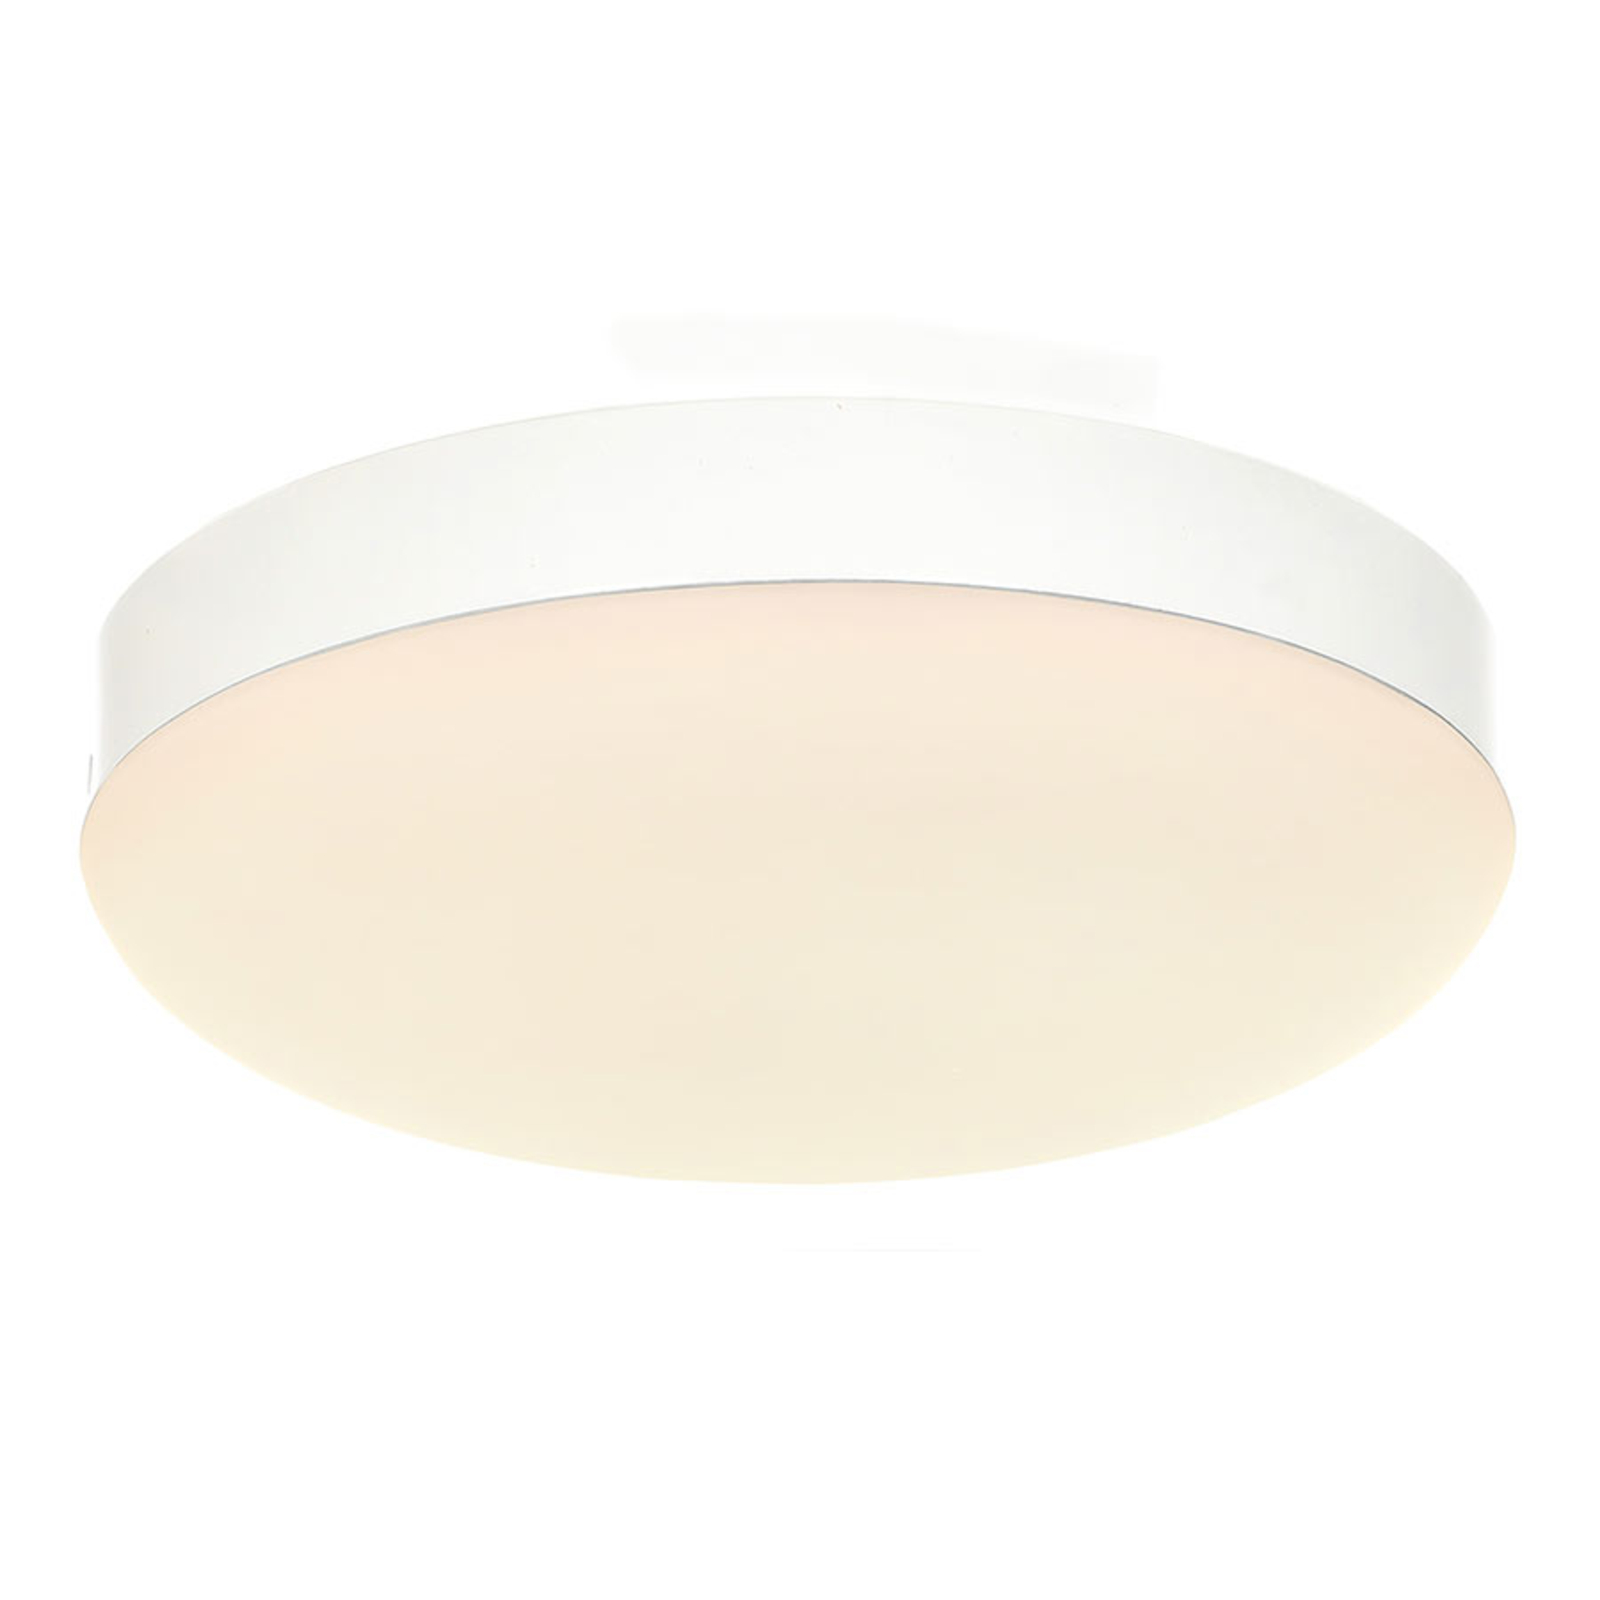 Lisä-LED-valaisin Eco Concept, valkoinen